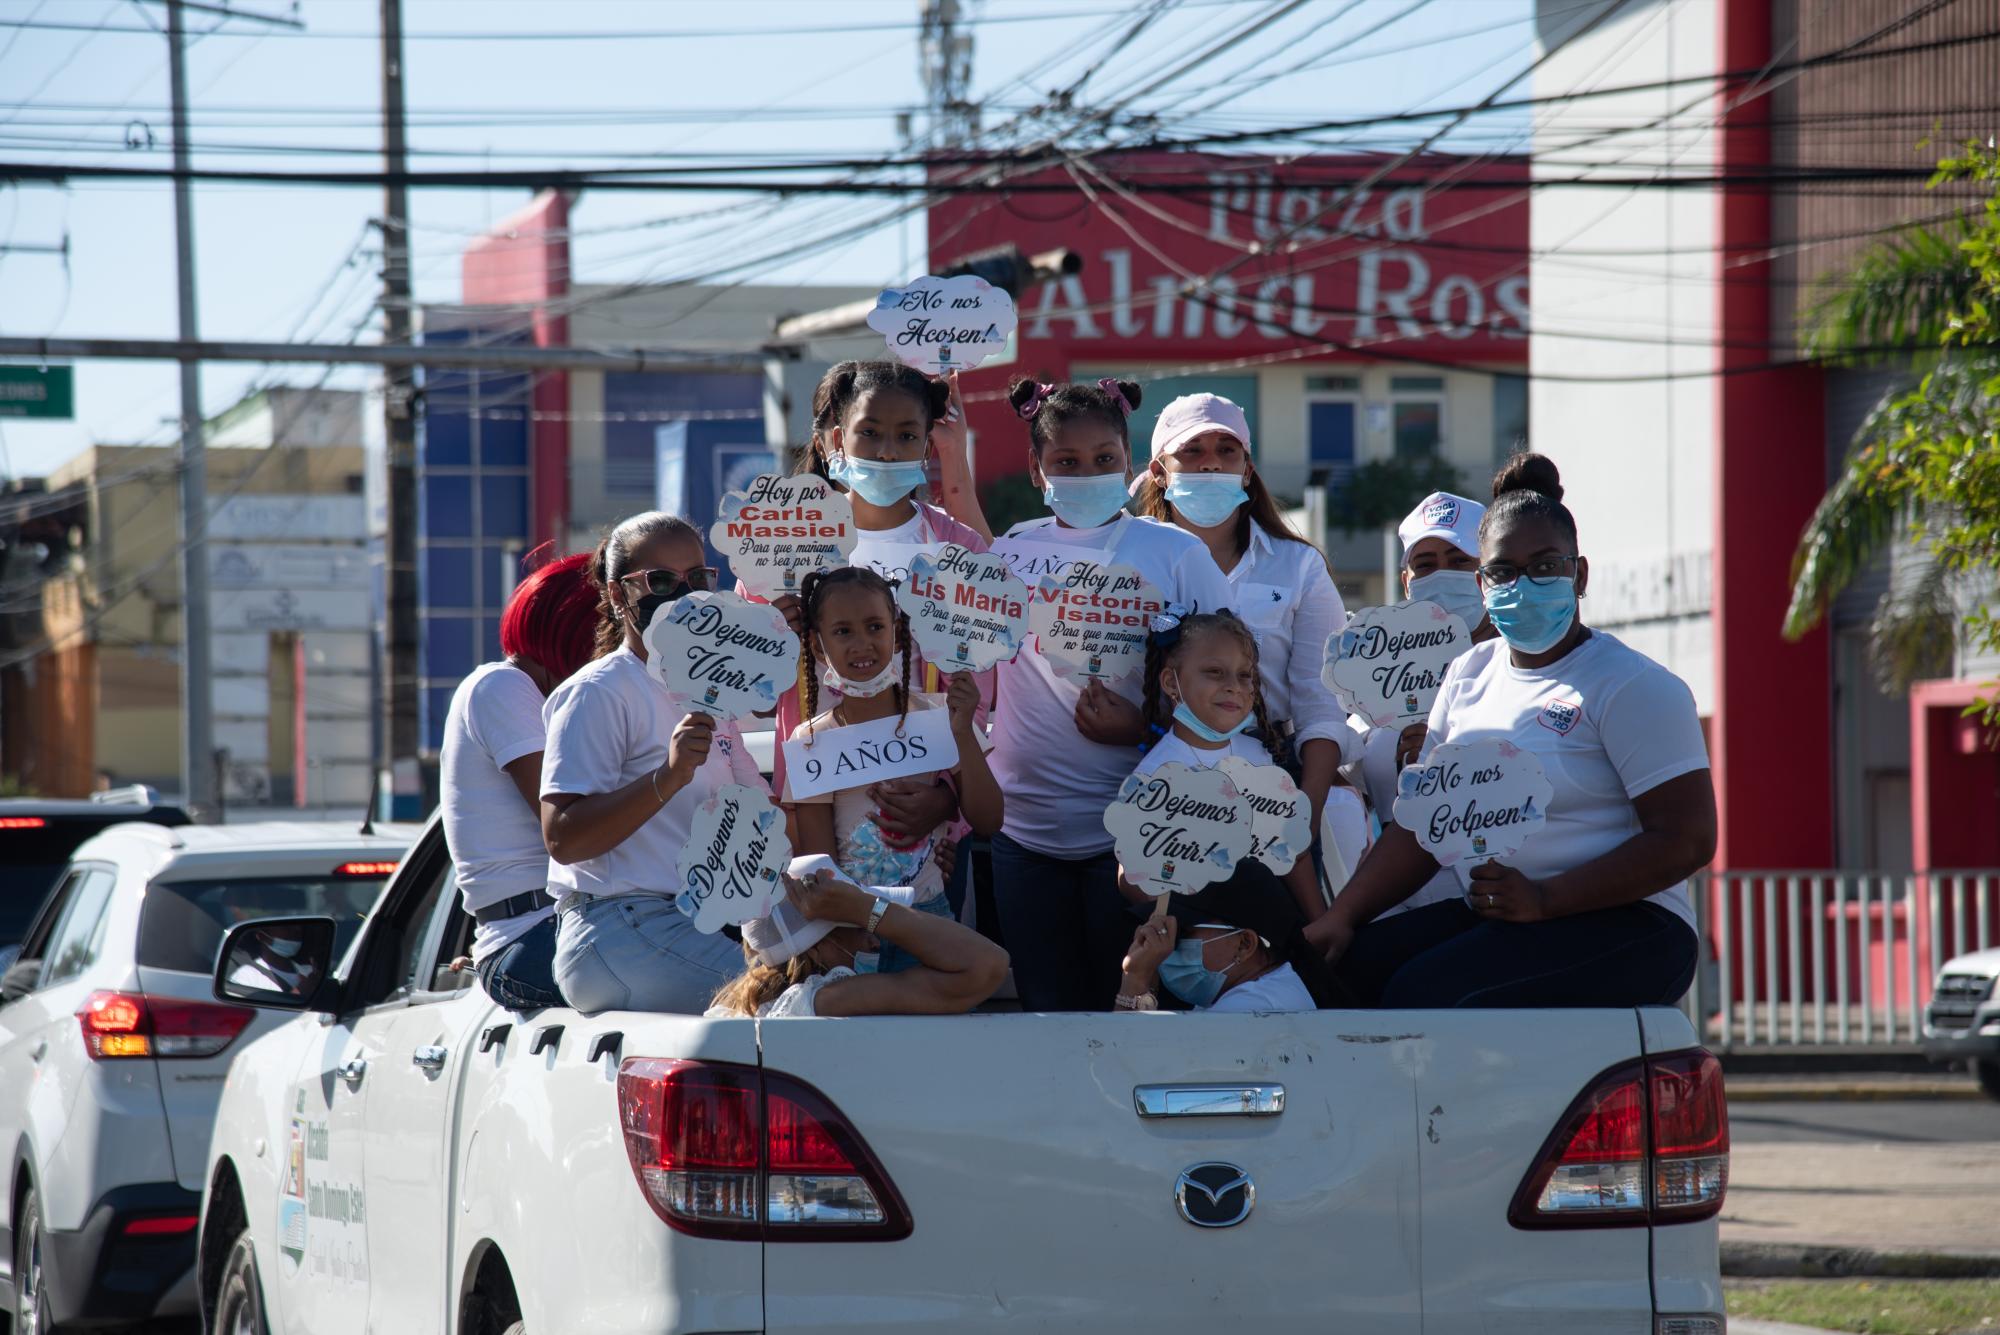 En Santo Domingo también se utilizaron vehículos para enviar el mensaje que pide eliminar la violencia contra la mujer. Foto: Dania Acevedo